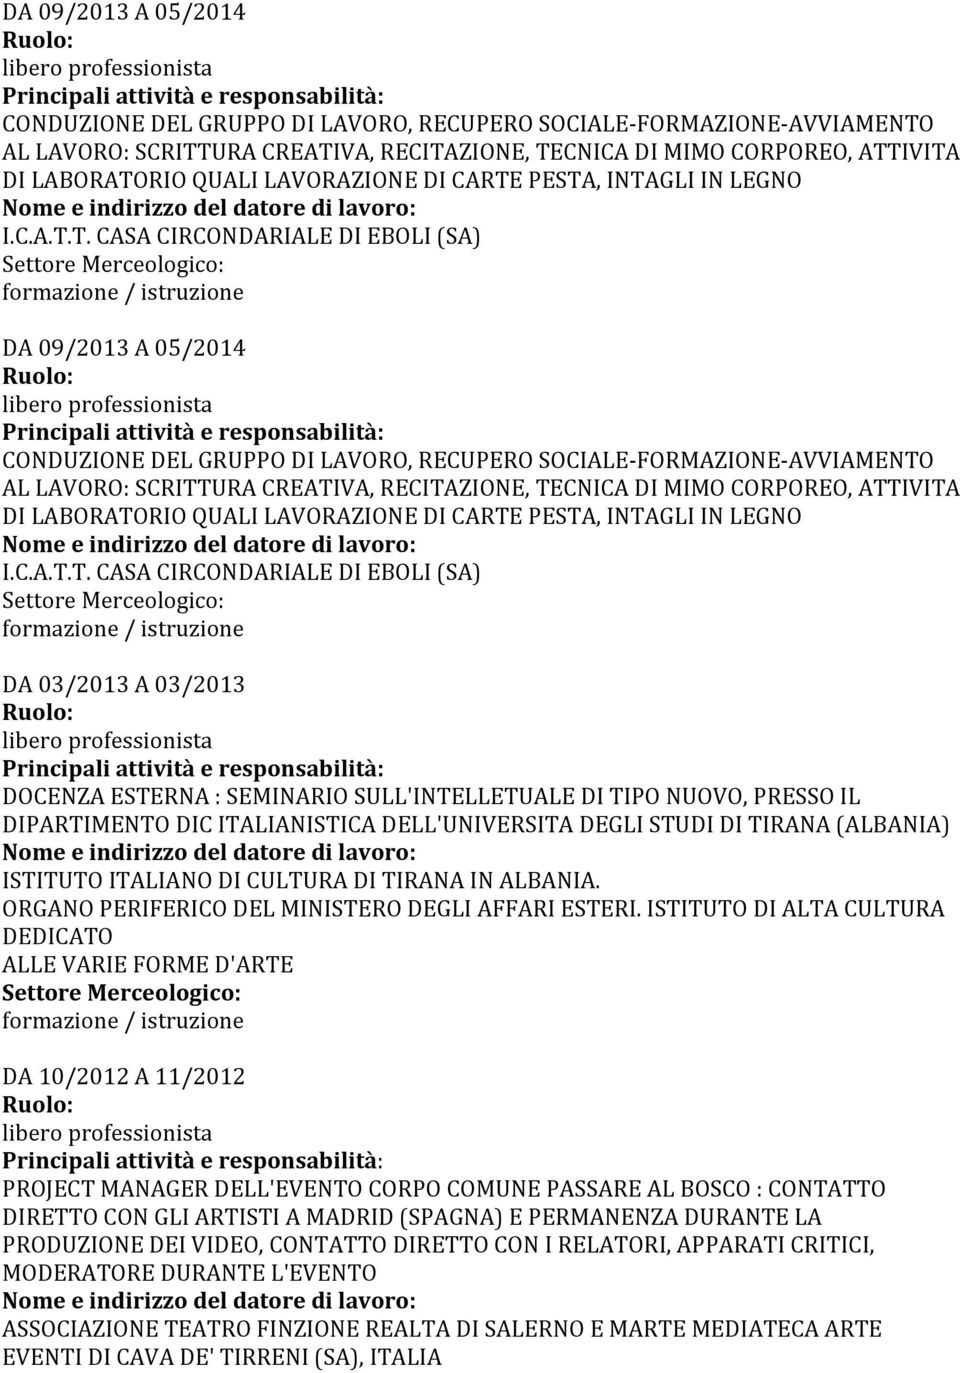 PESTA, INTAGLI IN LEGNO I.C.A.T.T. CASA CIRCONDARIALE DI EBOLI (SA)   PESTA, INTAGLI IN LEGNO I.C.A.T.T. CASA CIRCONDARIALE DI EBOLI (SA) DA 03/2013 A 03/2013 DOCENZA ESTERNA : SEMINARIO